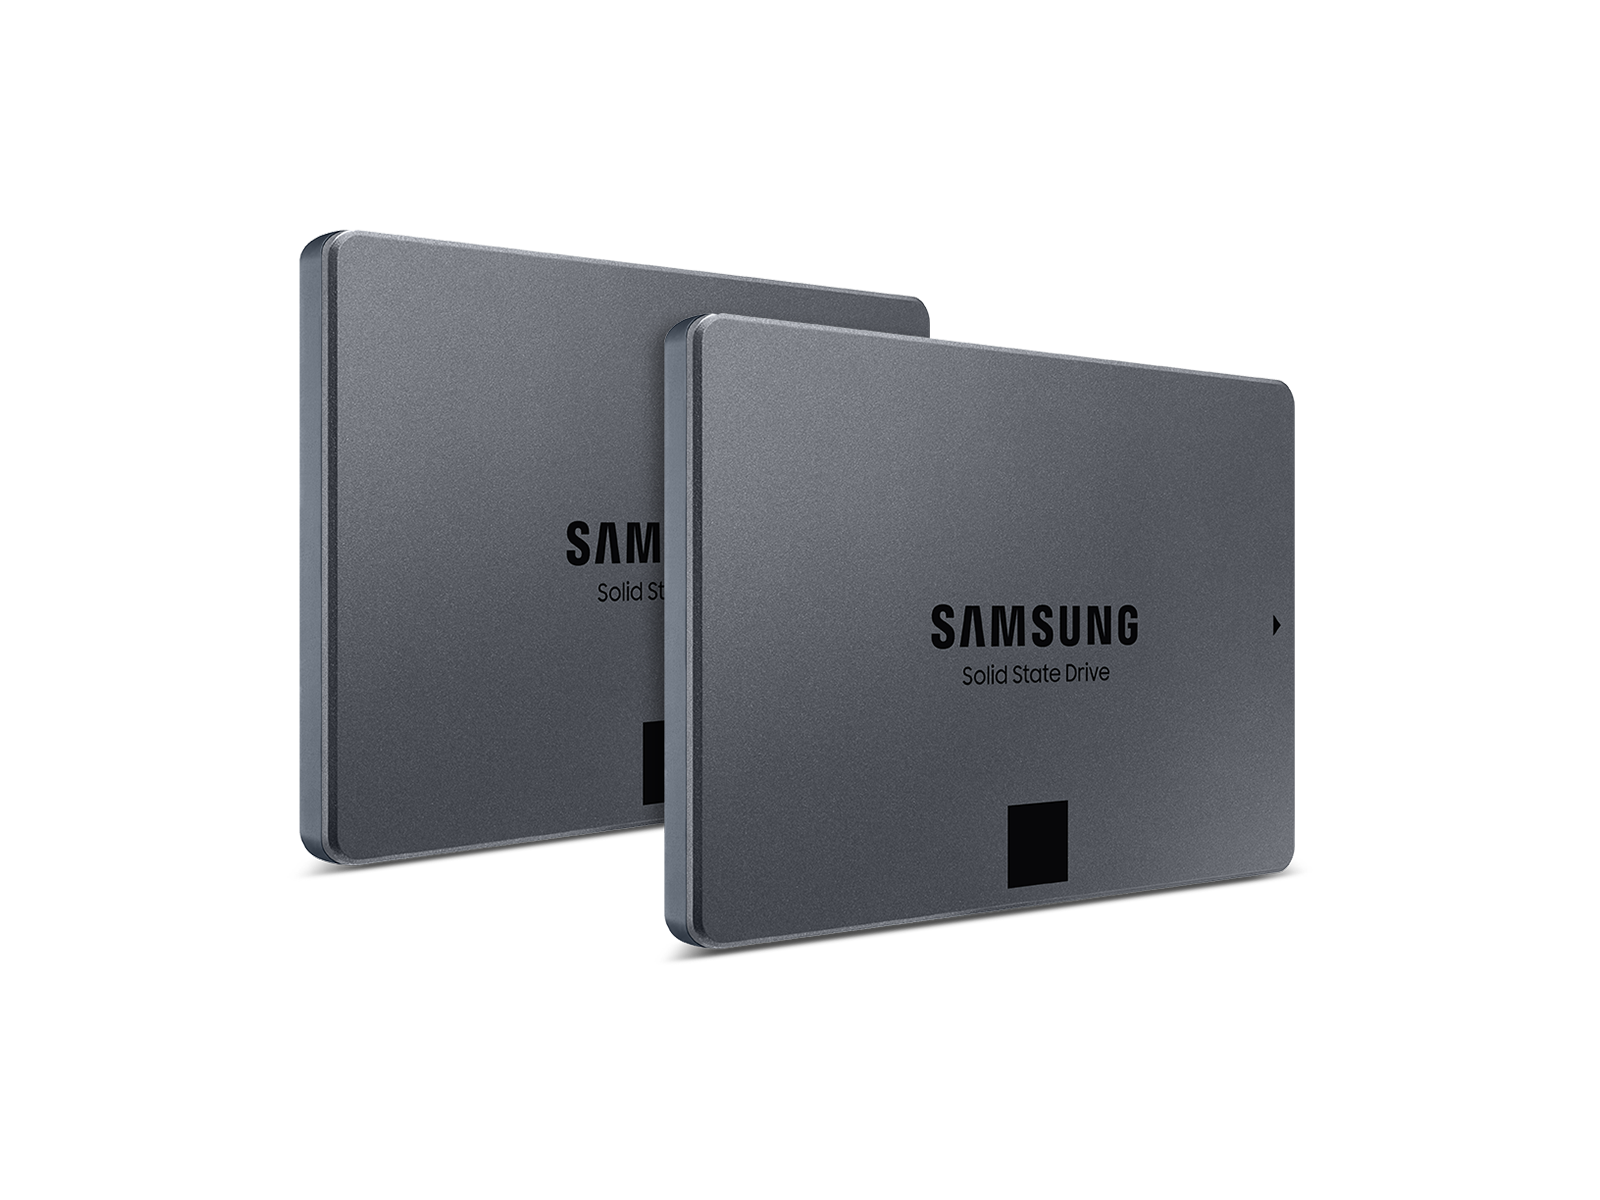 Samsung 870 QVO SATA III 2.5" SSD 8TB - 2 Pack(BNDL-1634757644516)